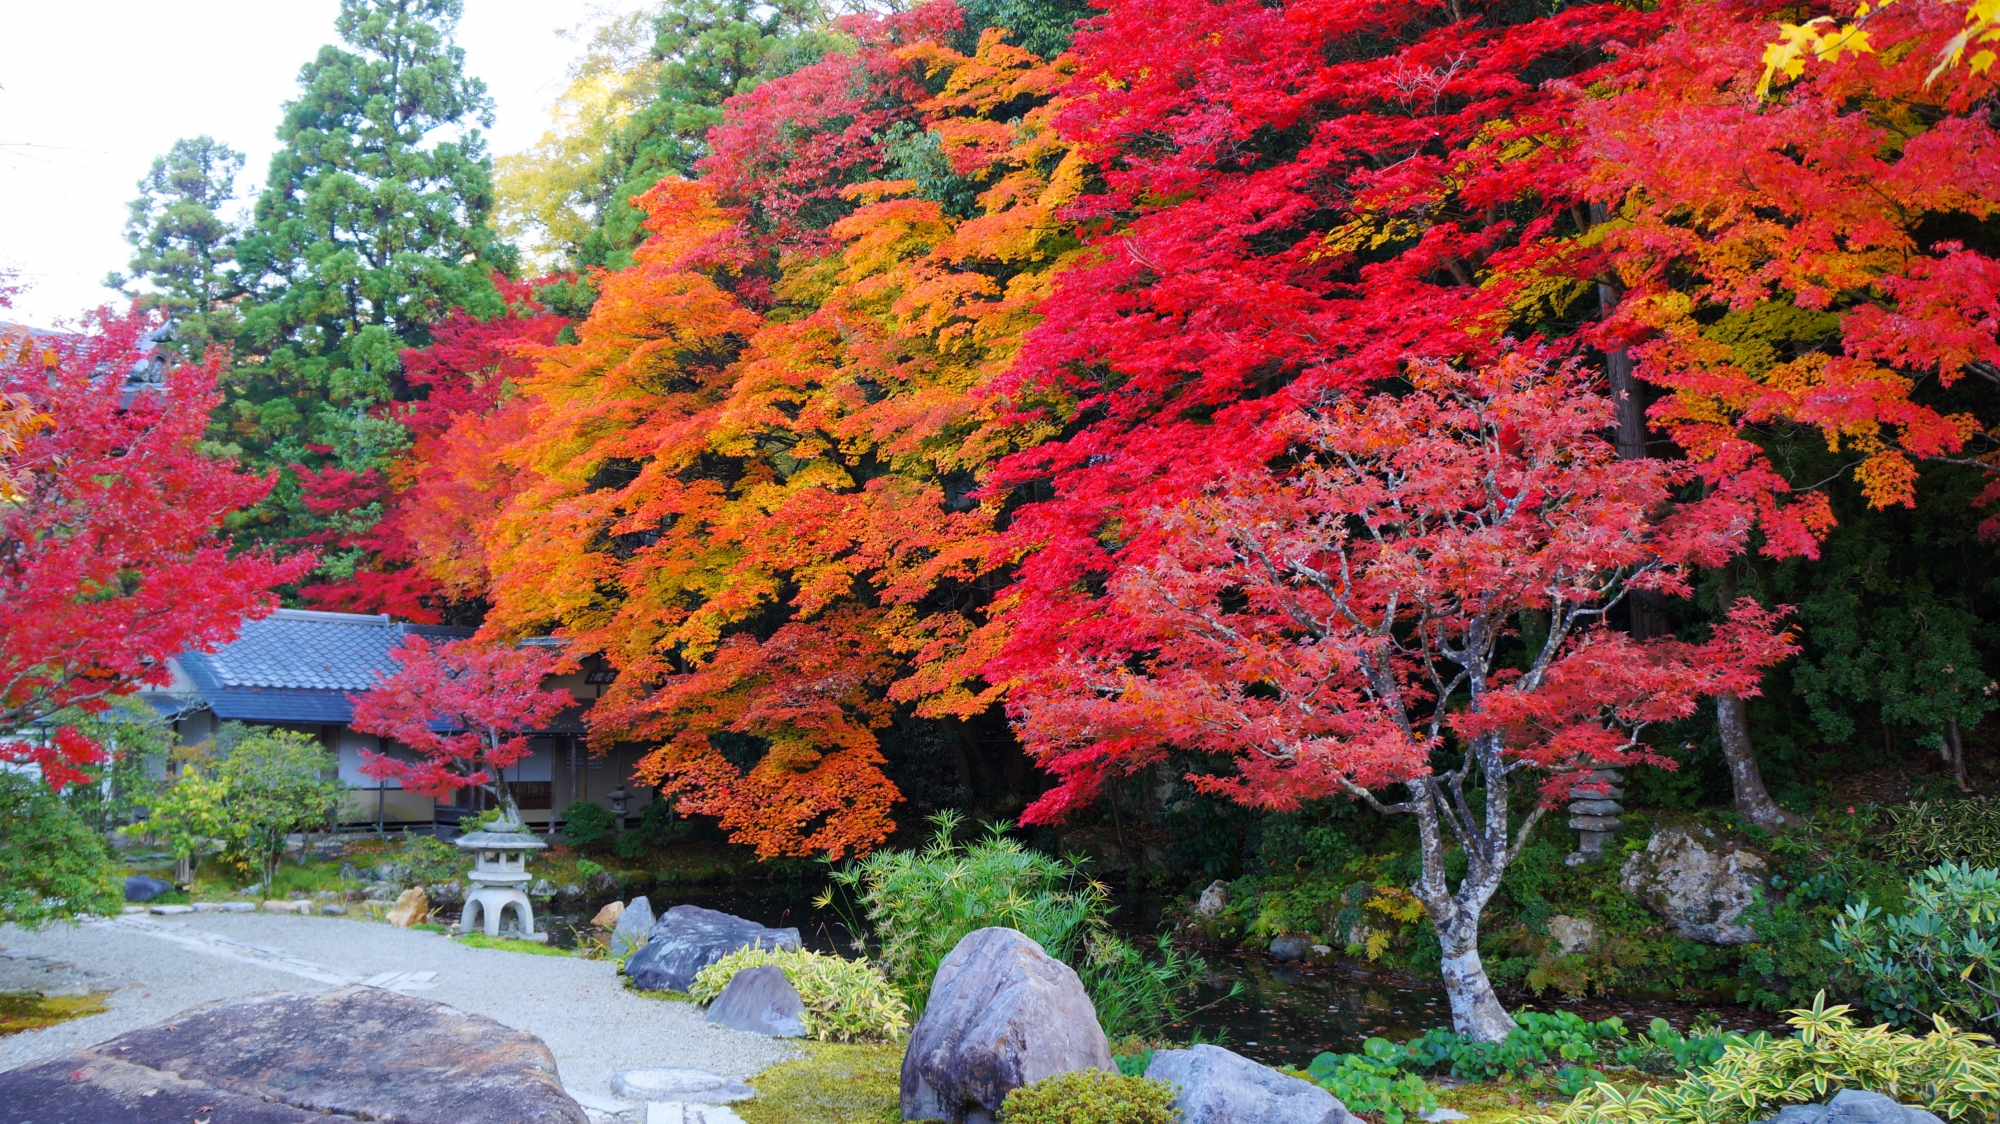 南禅寺方丈の龍吟庭の圧巻の紅葉